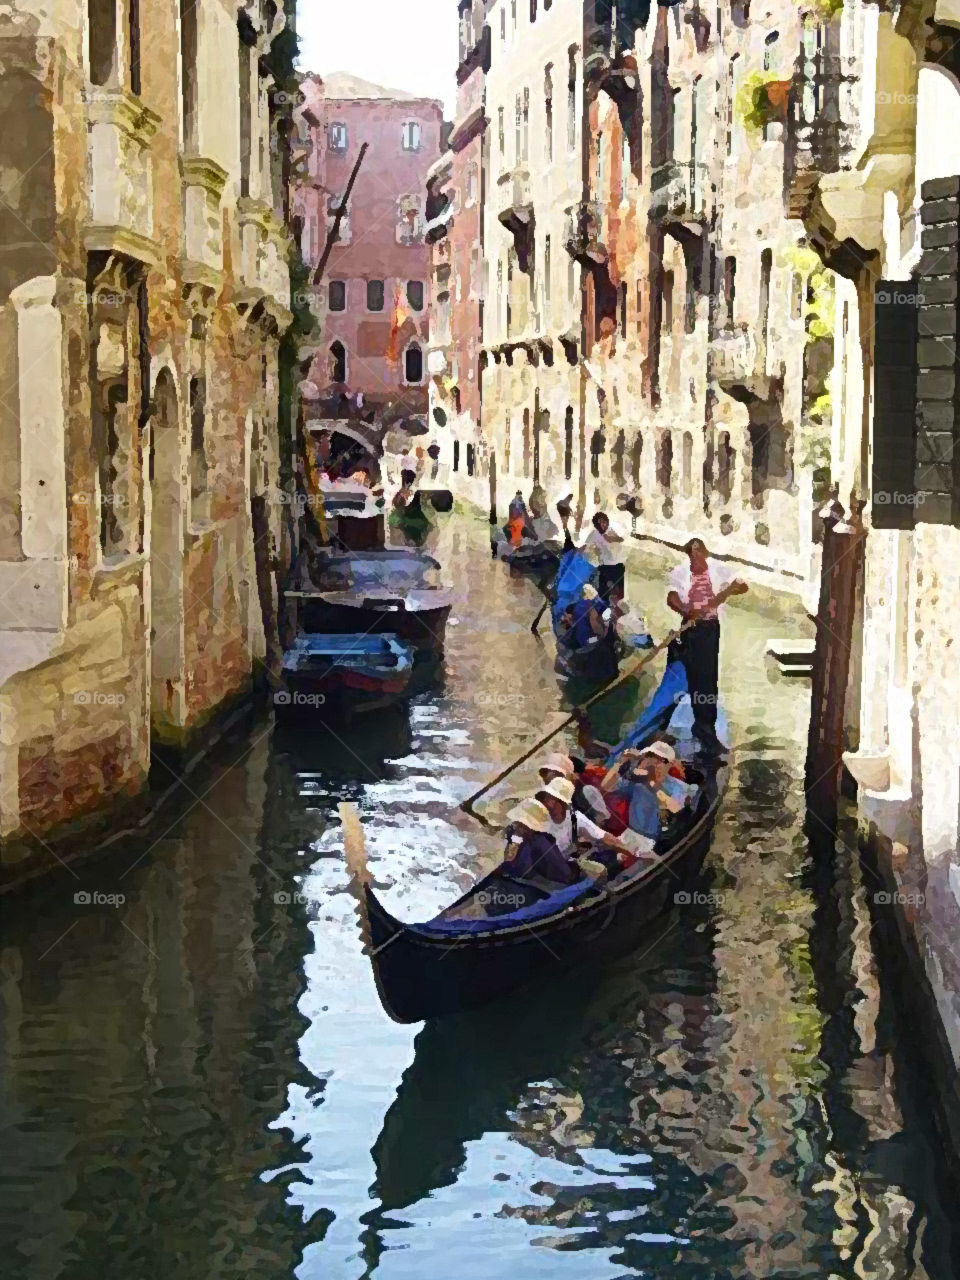 Gondola in Venise in Italy